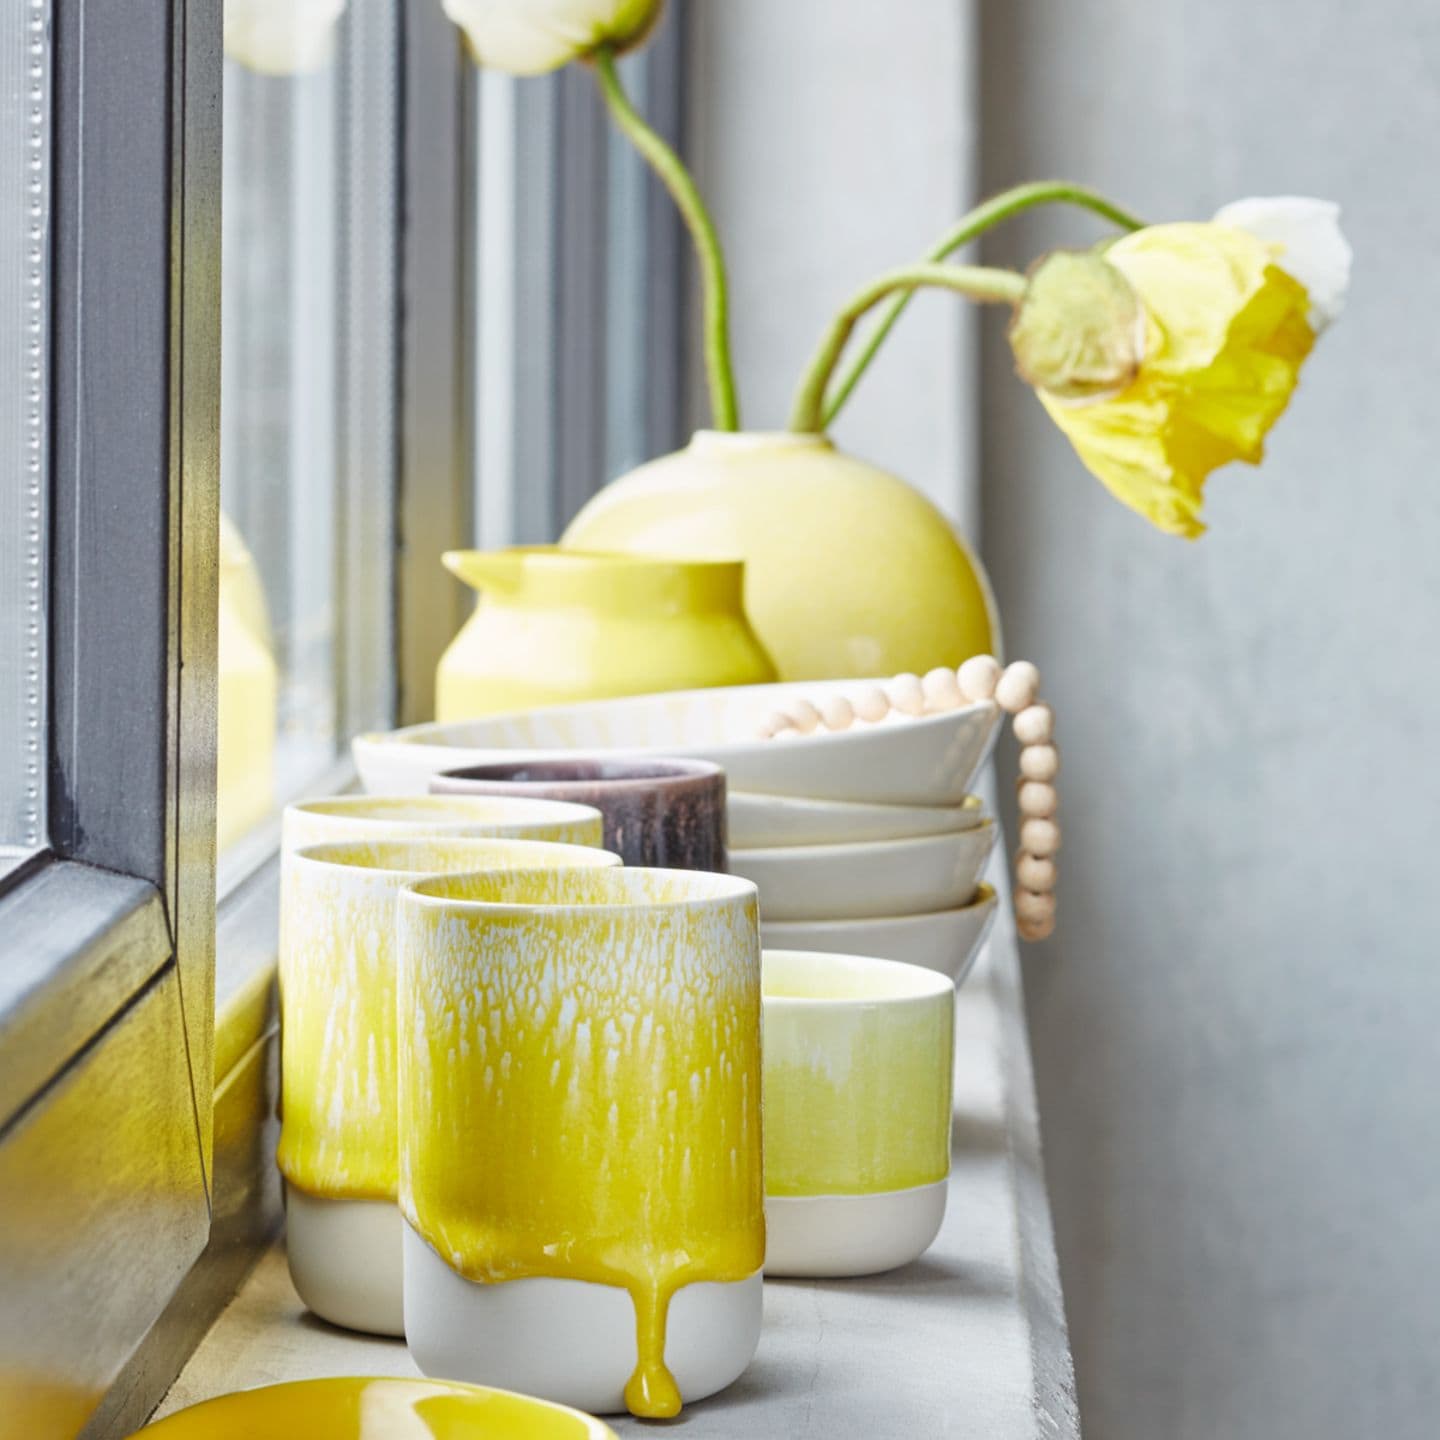 Keramikbecher mit Farbnasen, Tischdecko in sommerlichem Gelb